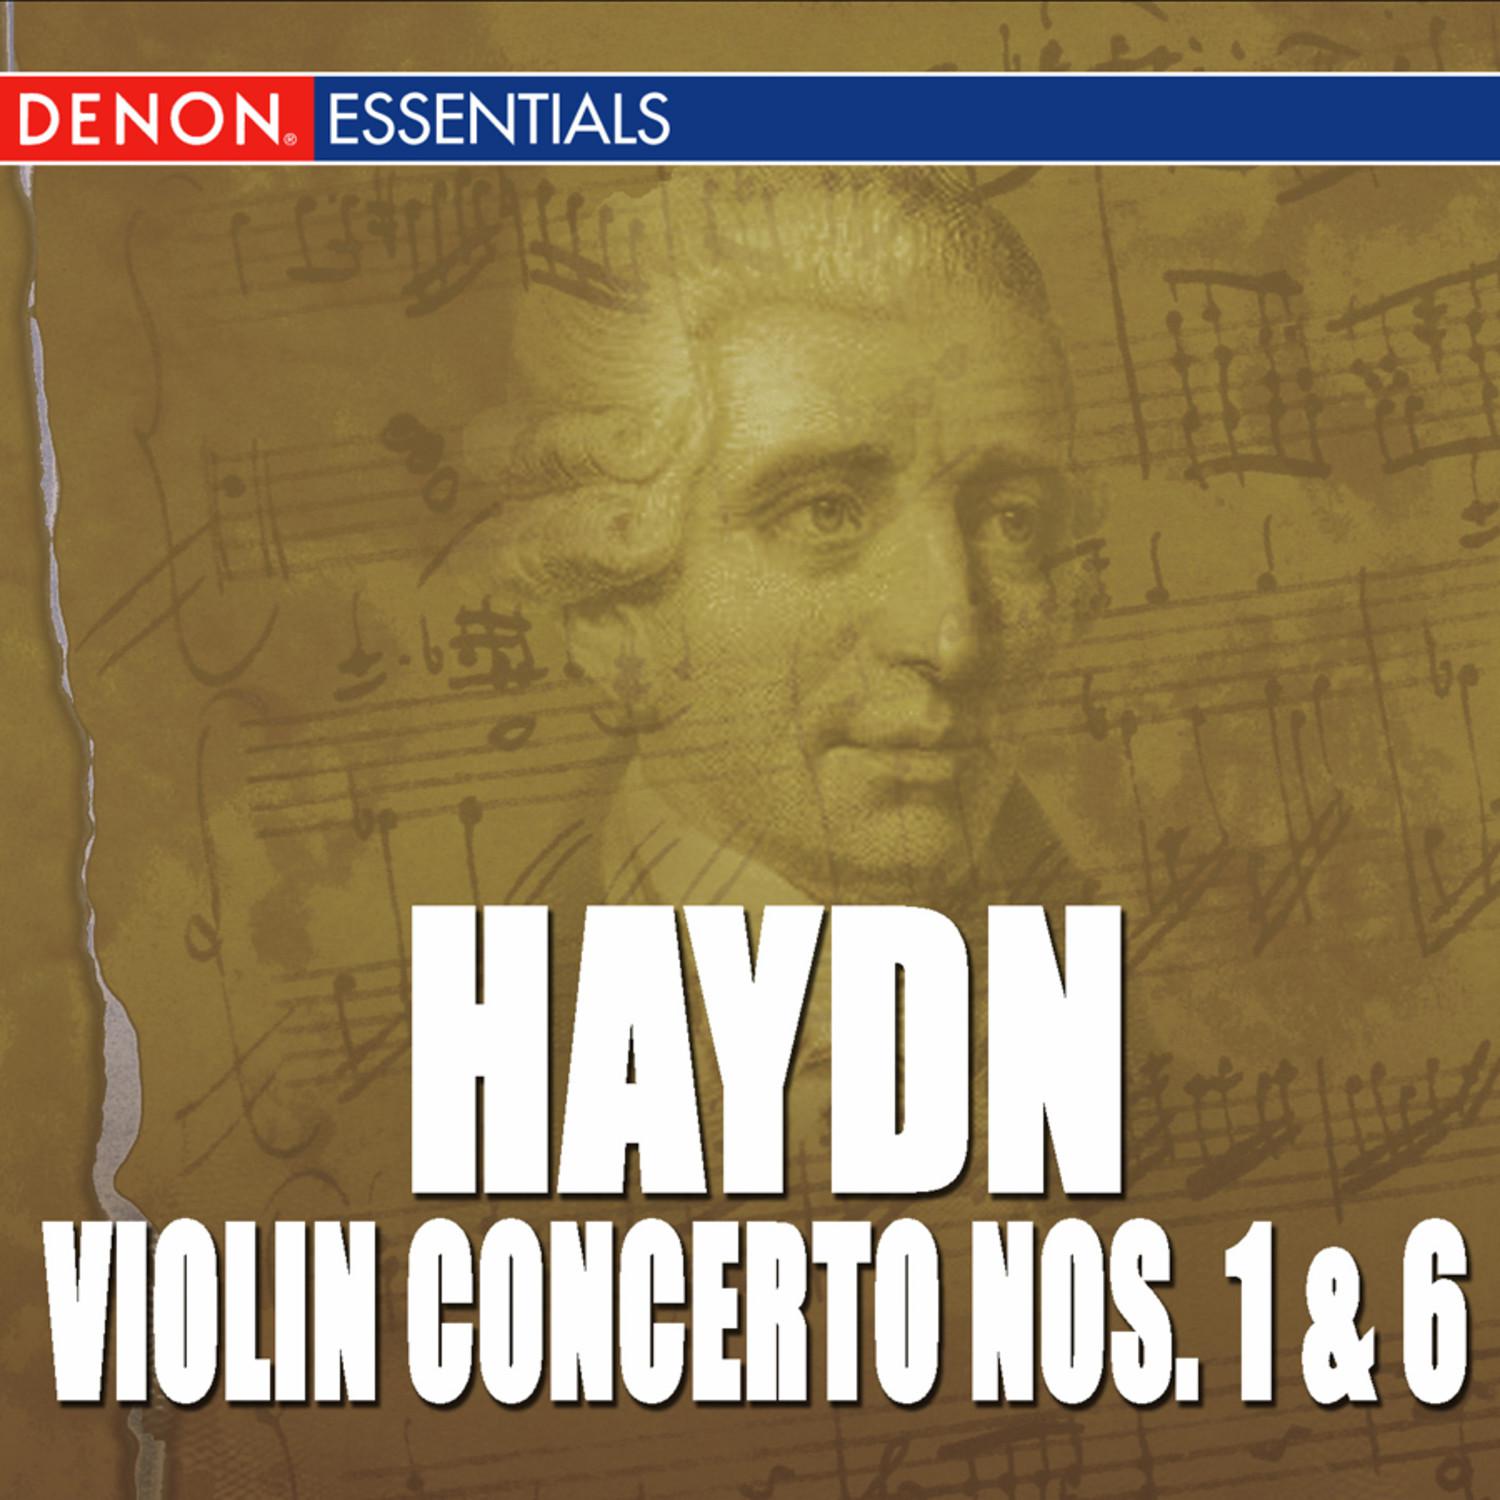 Concerto for Violin and Orchestra No. 1 in C Major: I. Allegro molto